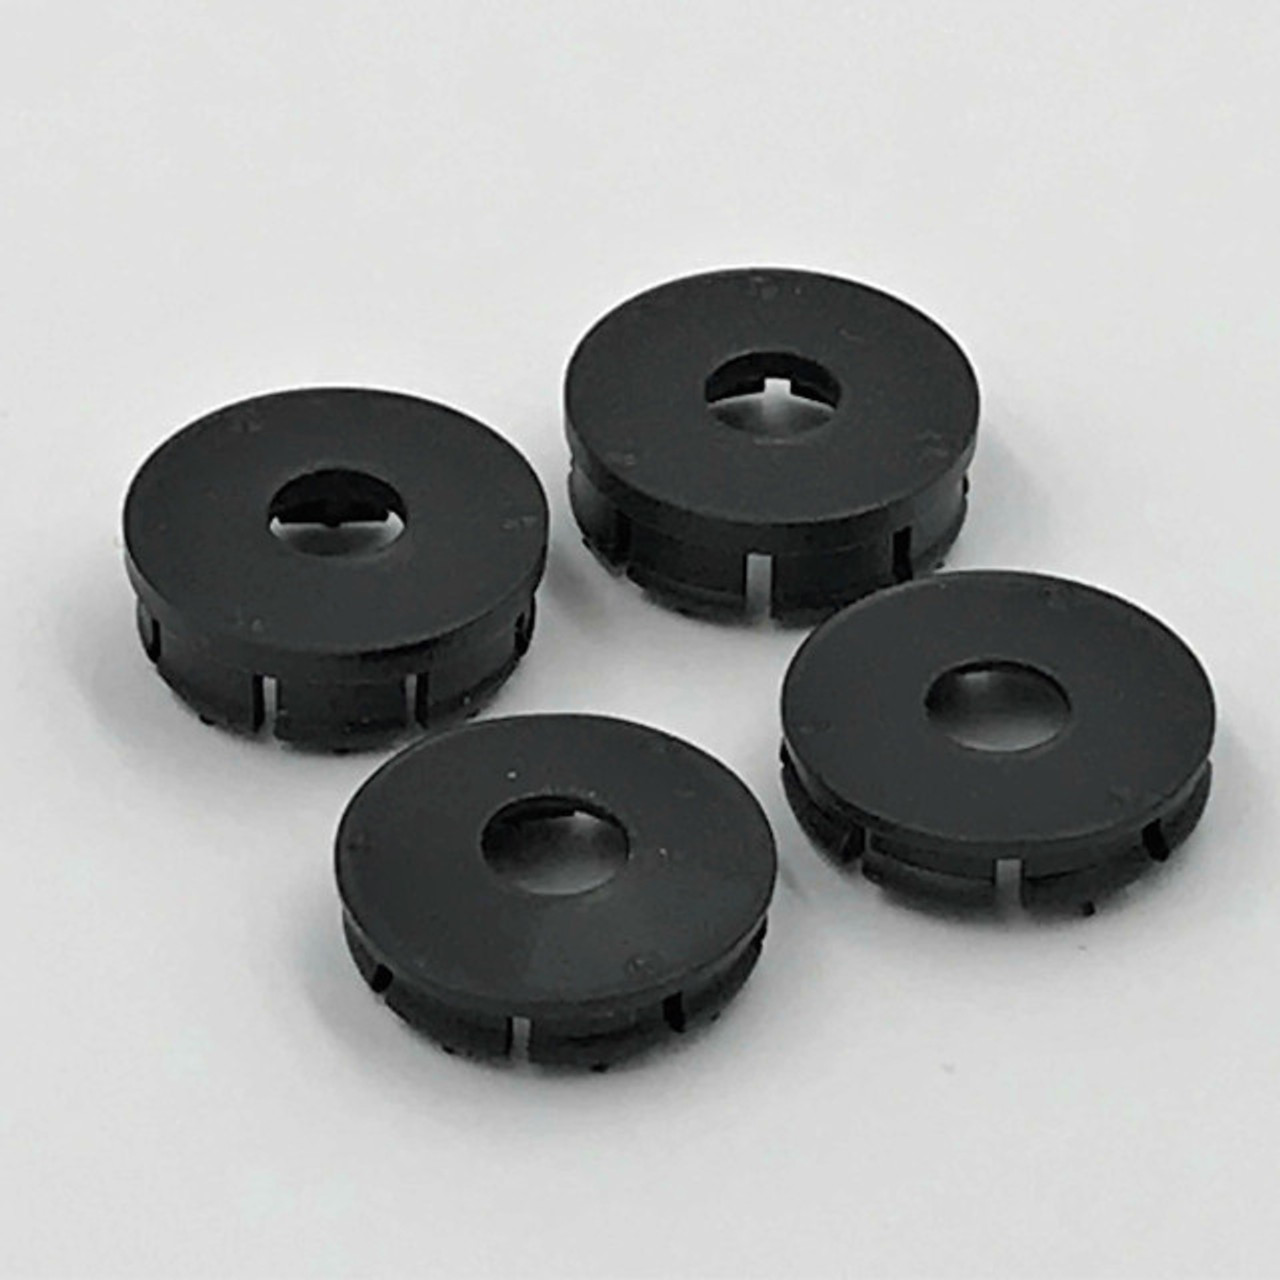 1RC Racing Wheel Covers, Black, 3D Printed, 1/18 Midget